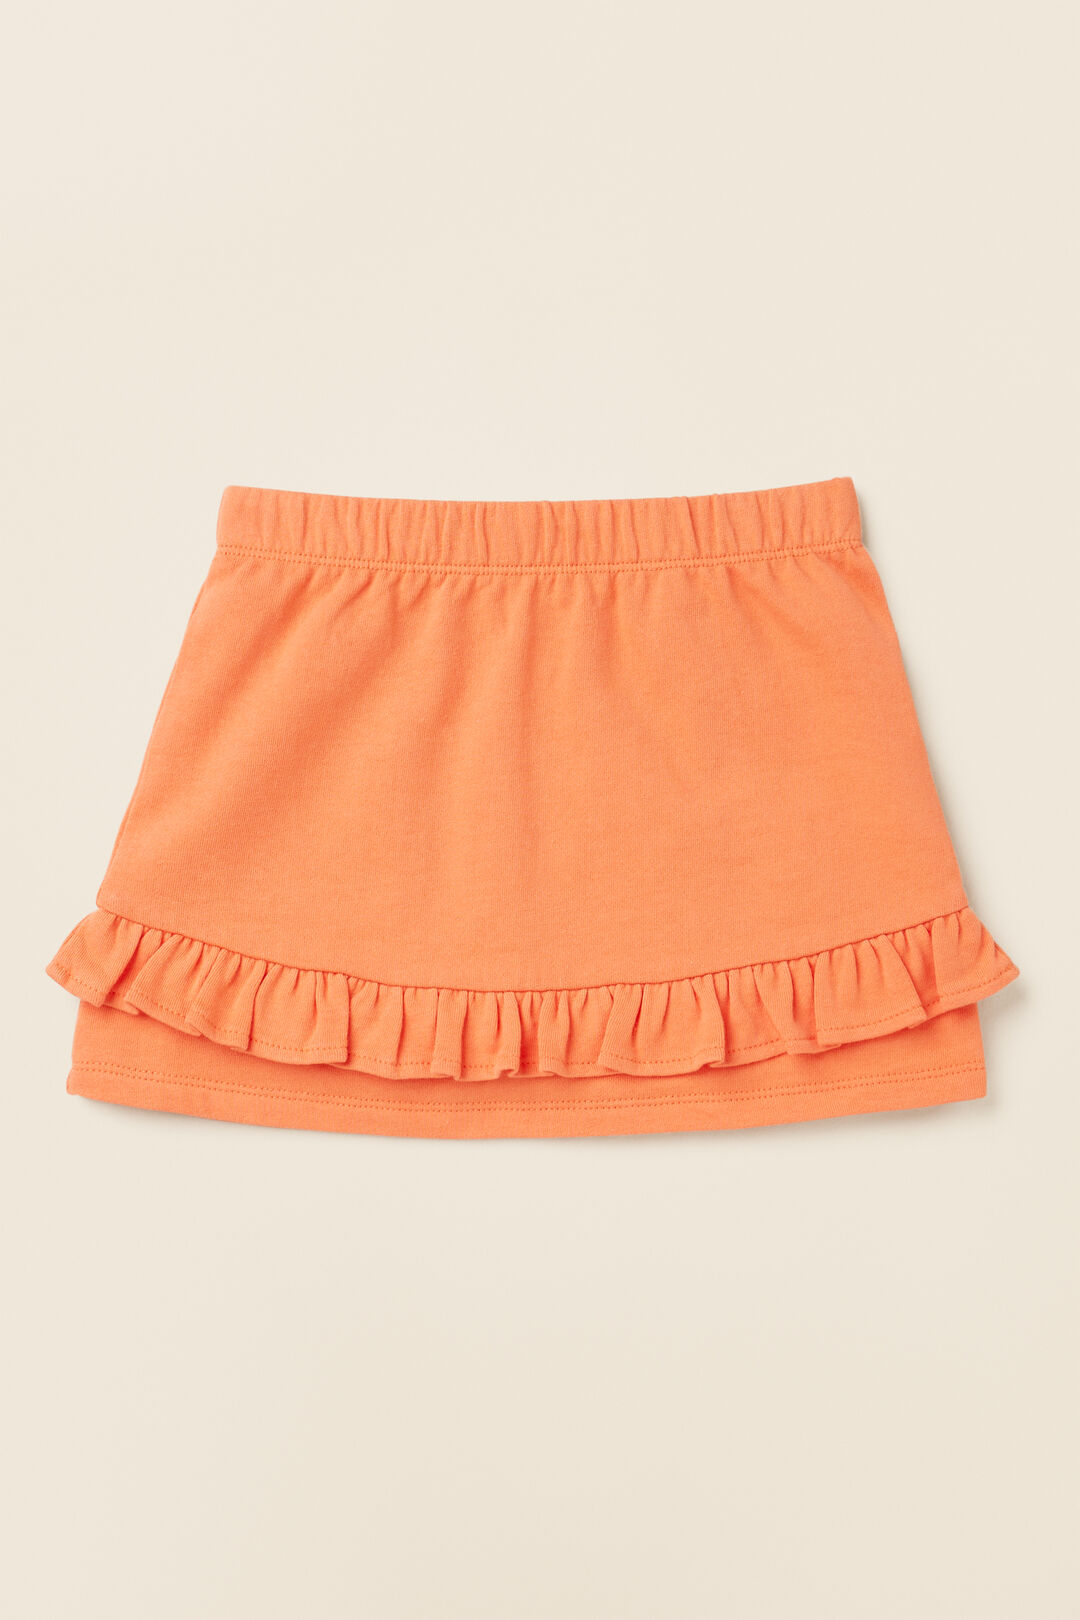 Terry Frill Skirt  Tangerine  hi-res